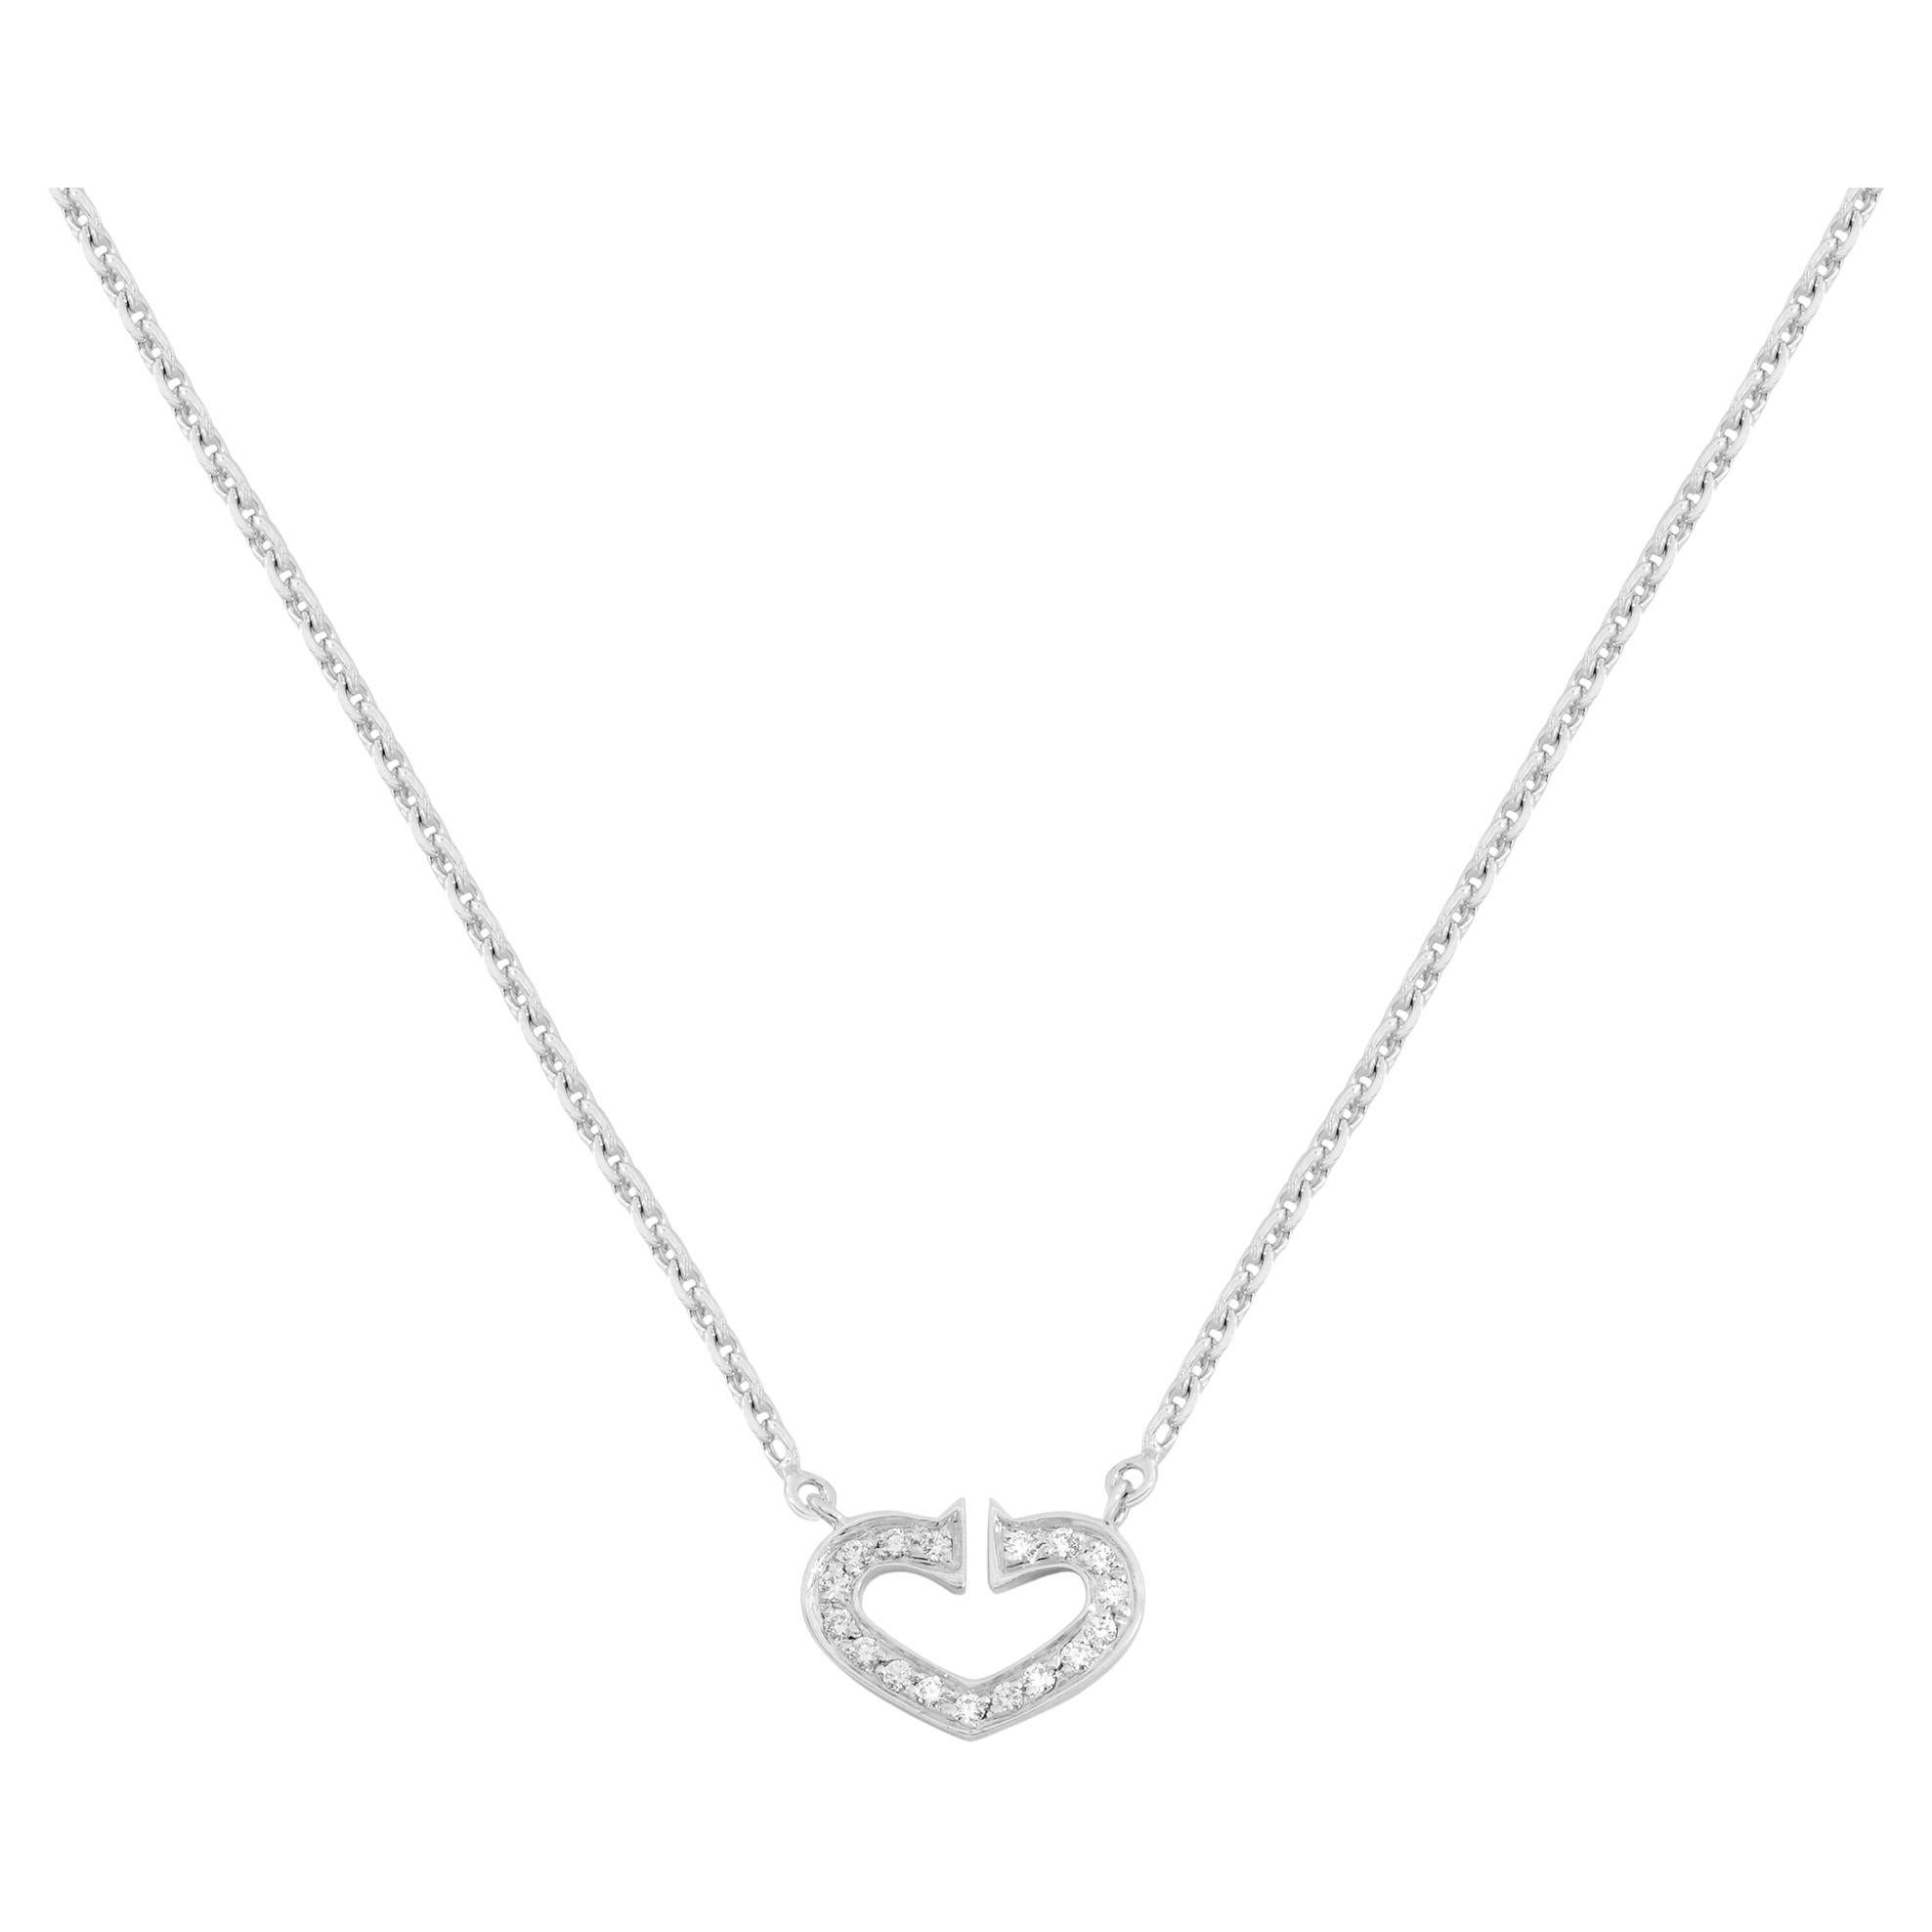 Cartier C Heart Diamond Ladies Necklace 18K White Gold 0.09cttw